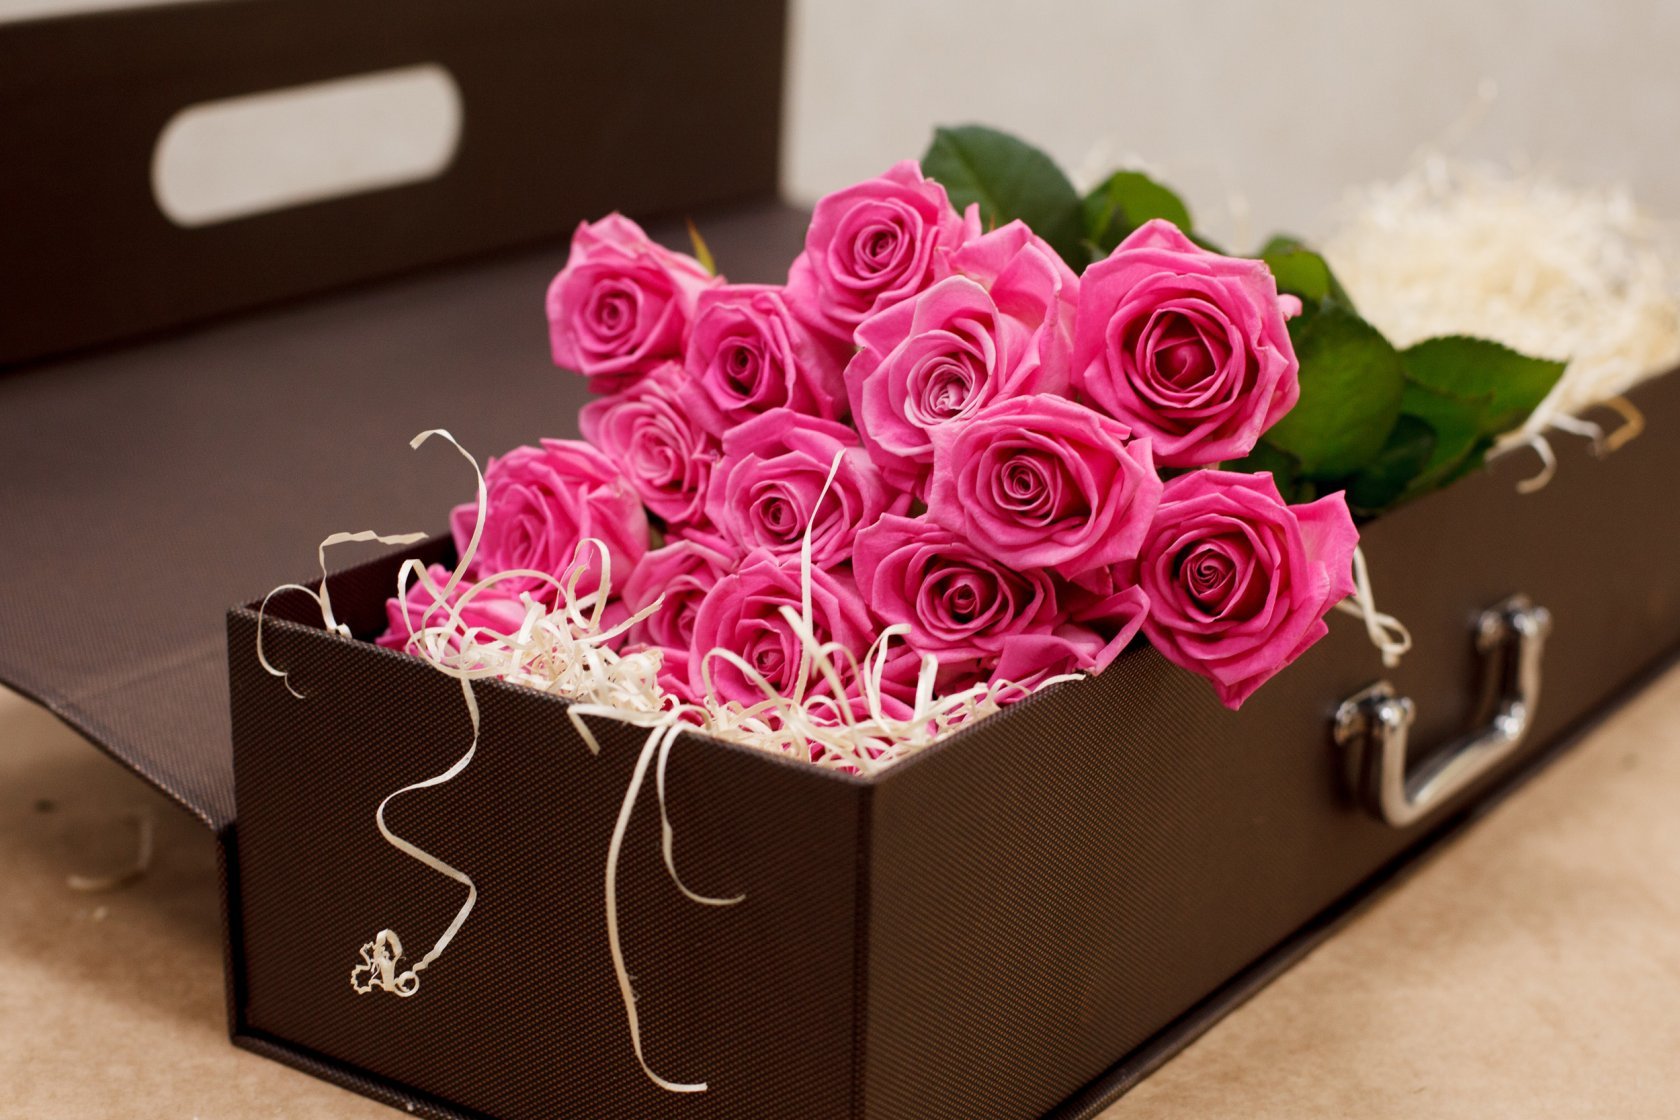 Картинка коробка с цветами. Цветы в коробке. Розы в коробке. Красивый букет в коробке. Коробка для цветов.